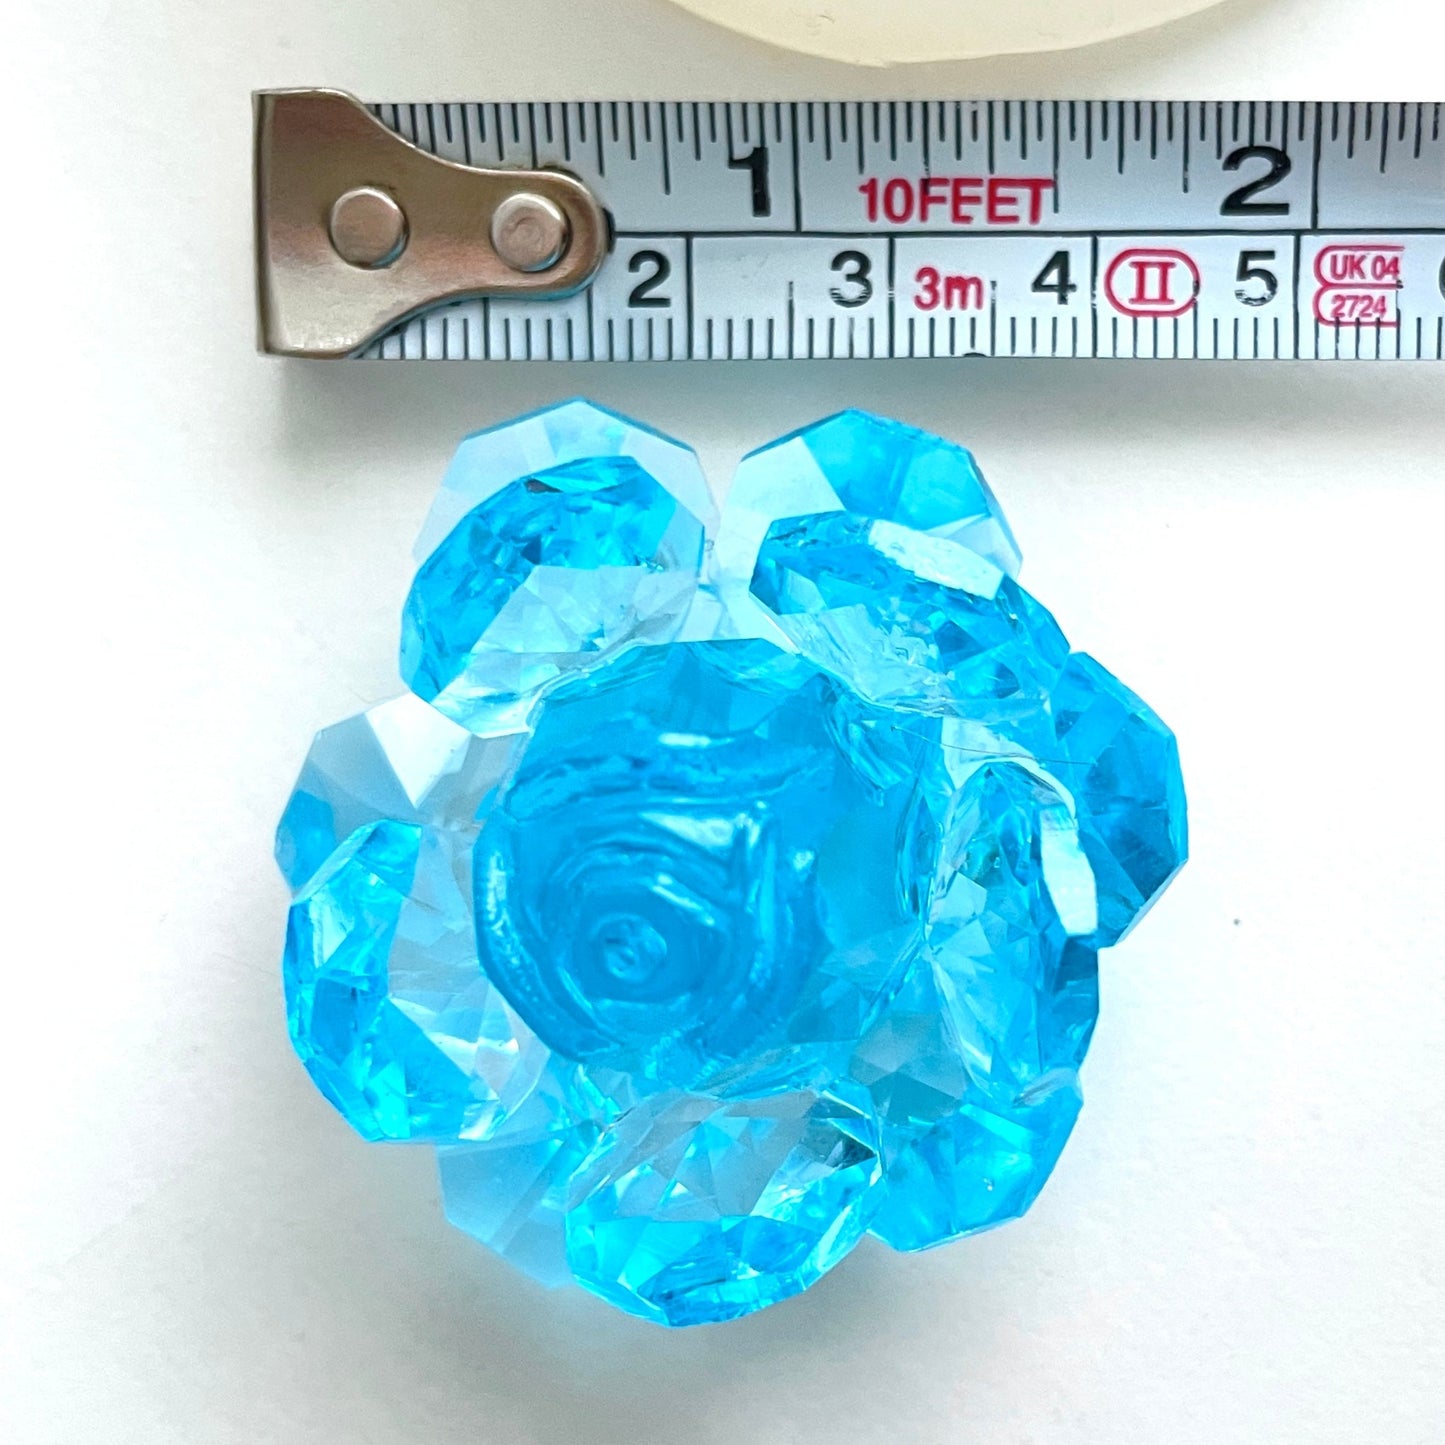 Funkelnde Eleganz: Kristallrosen-Silikonform für atemberaubende Kreationen